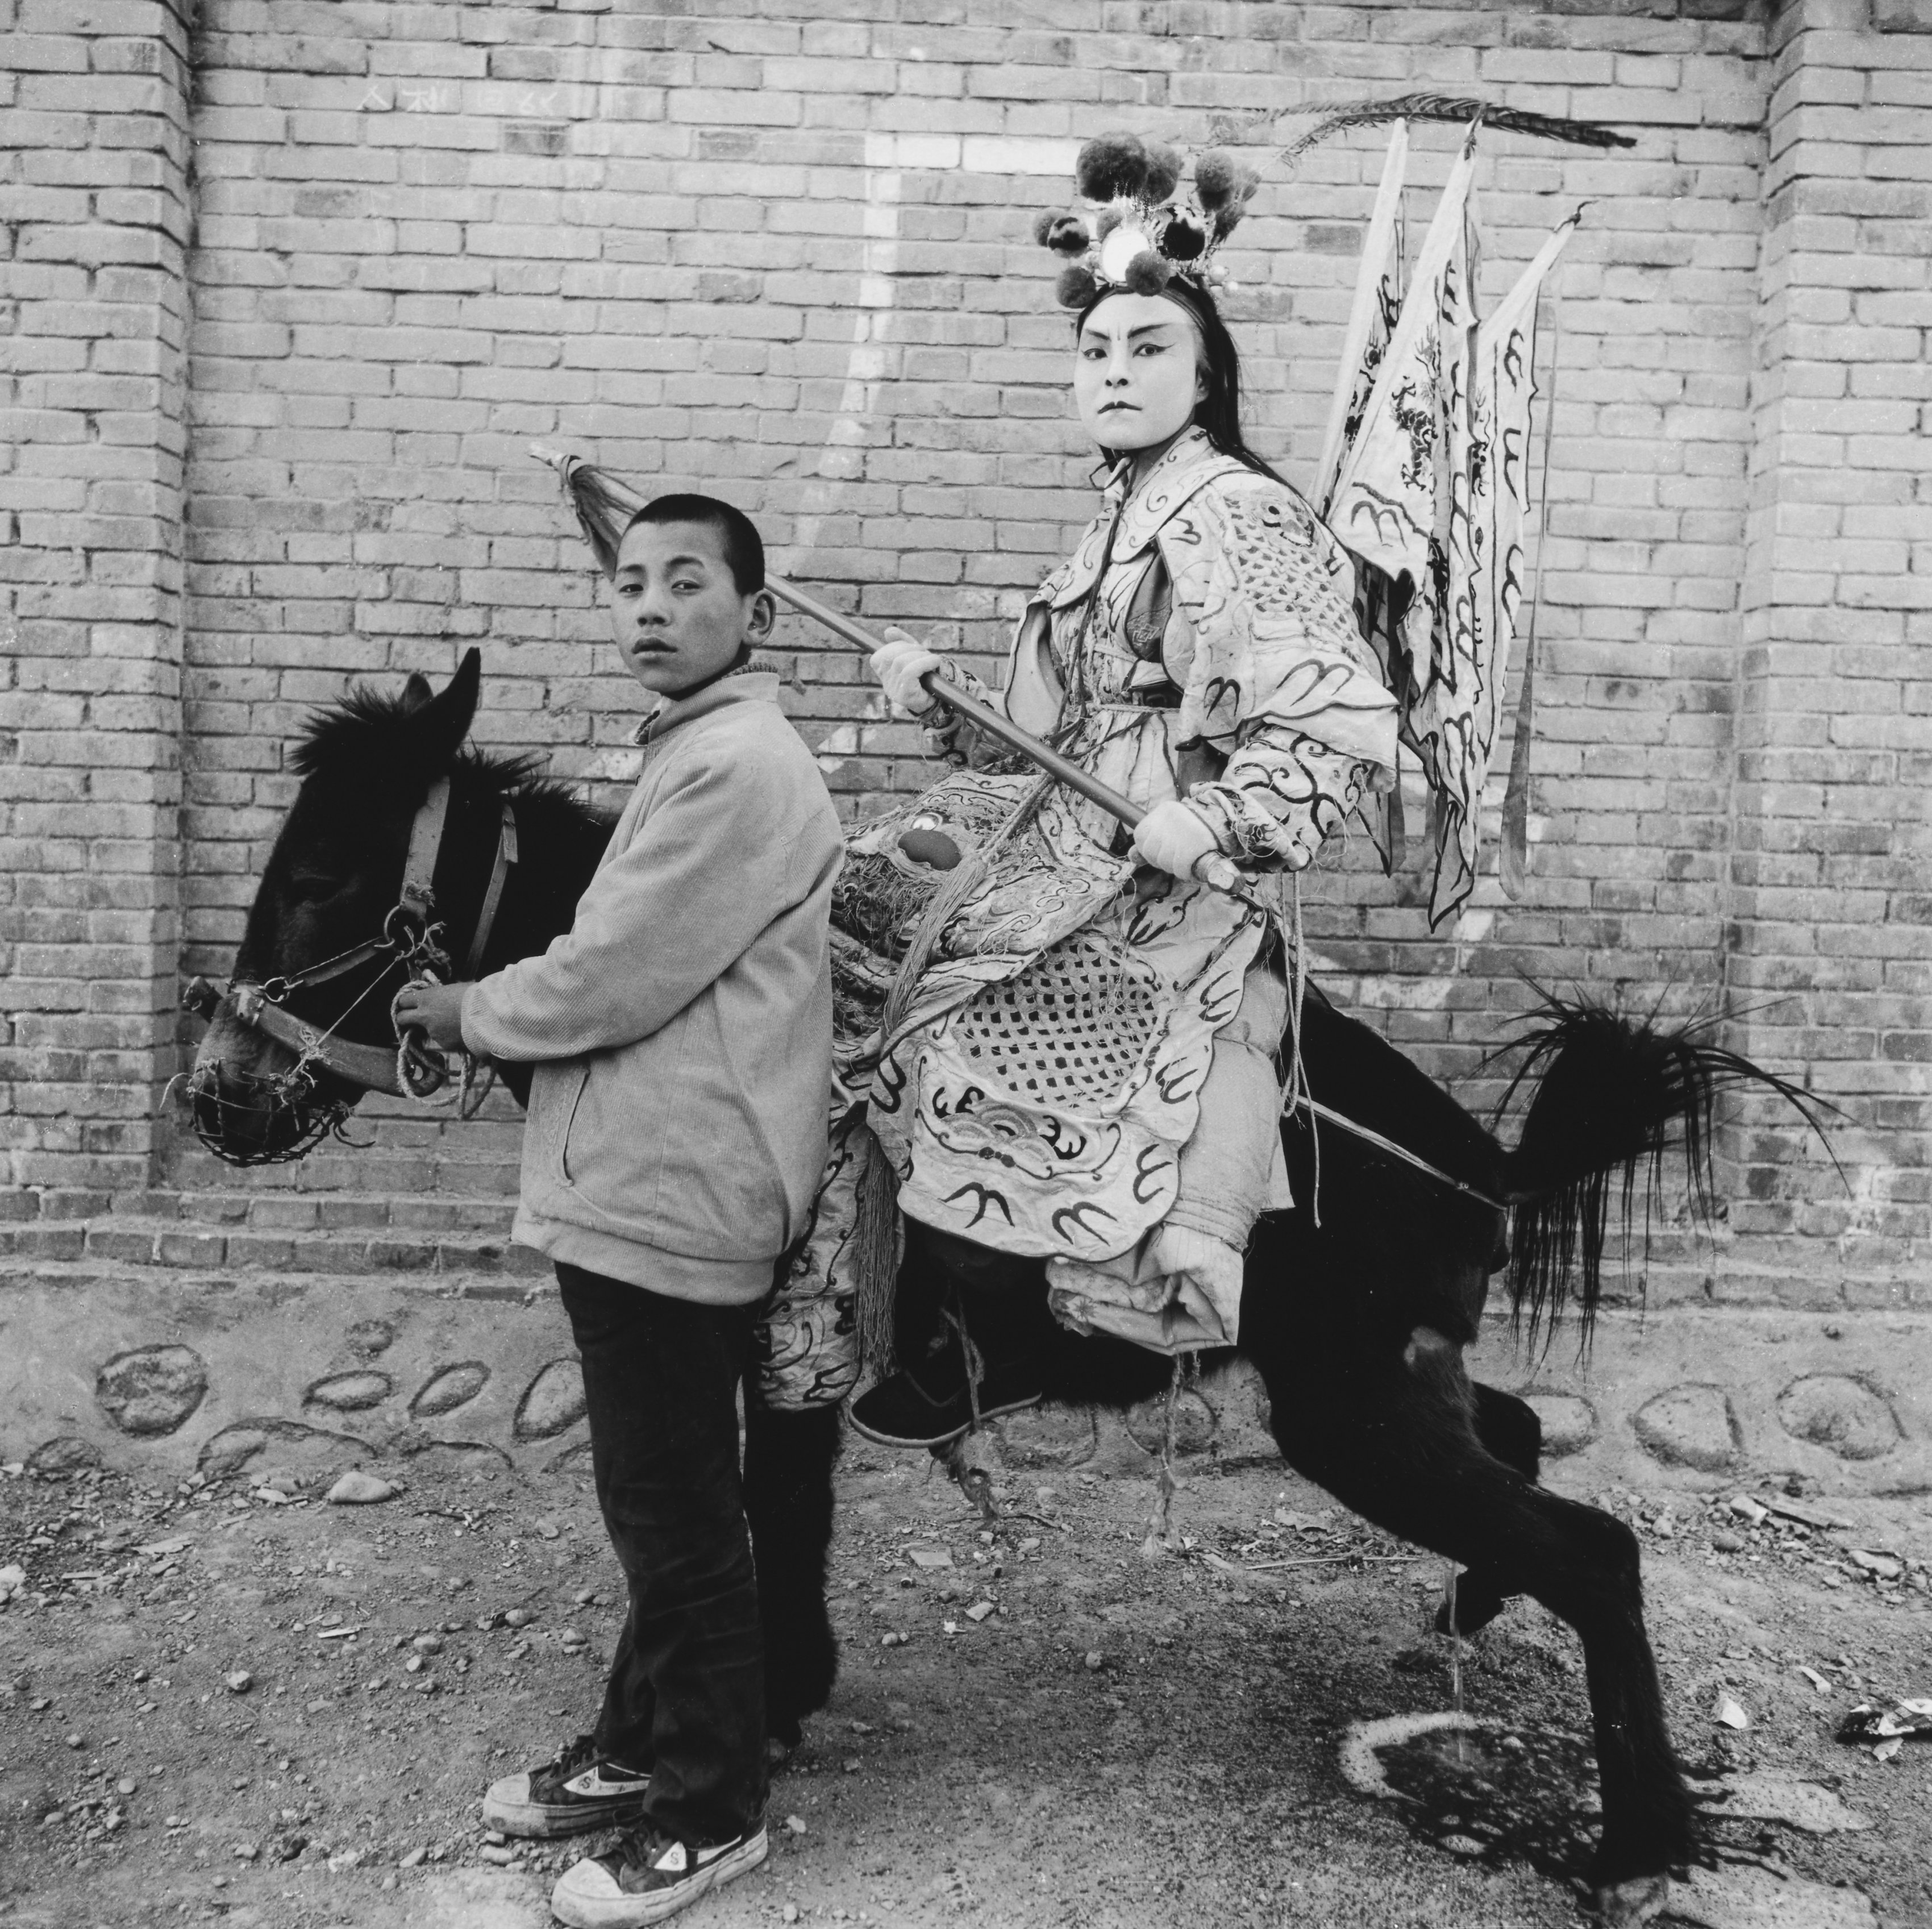 Warrior on Donkey, Shaanxi Province